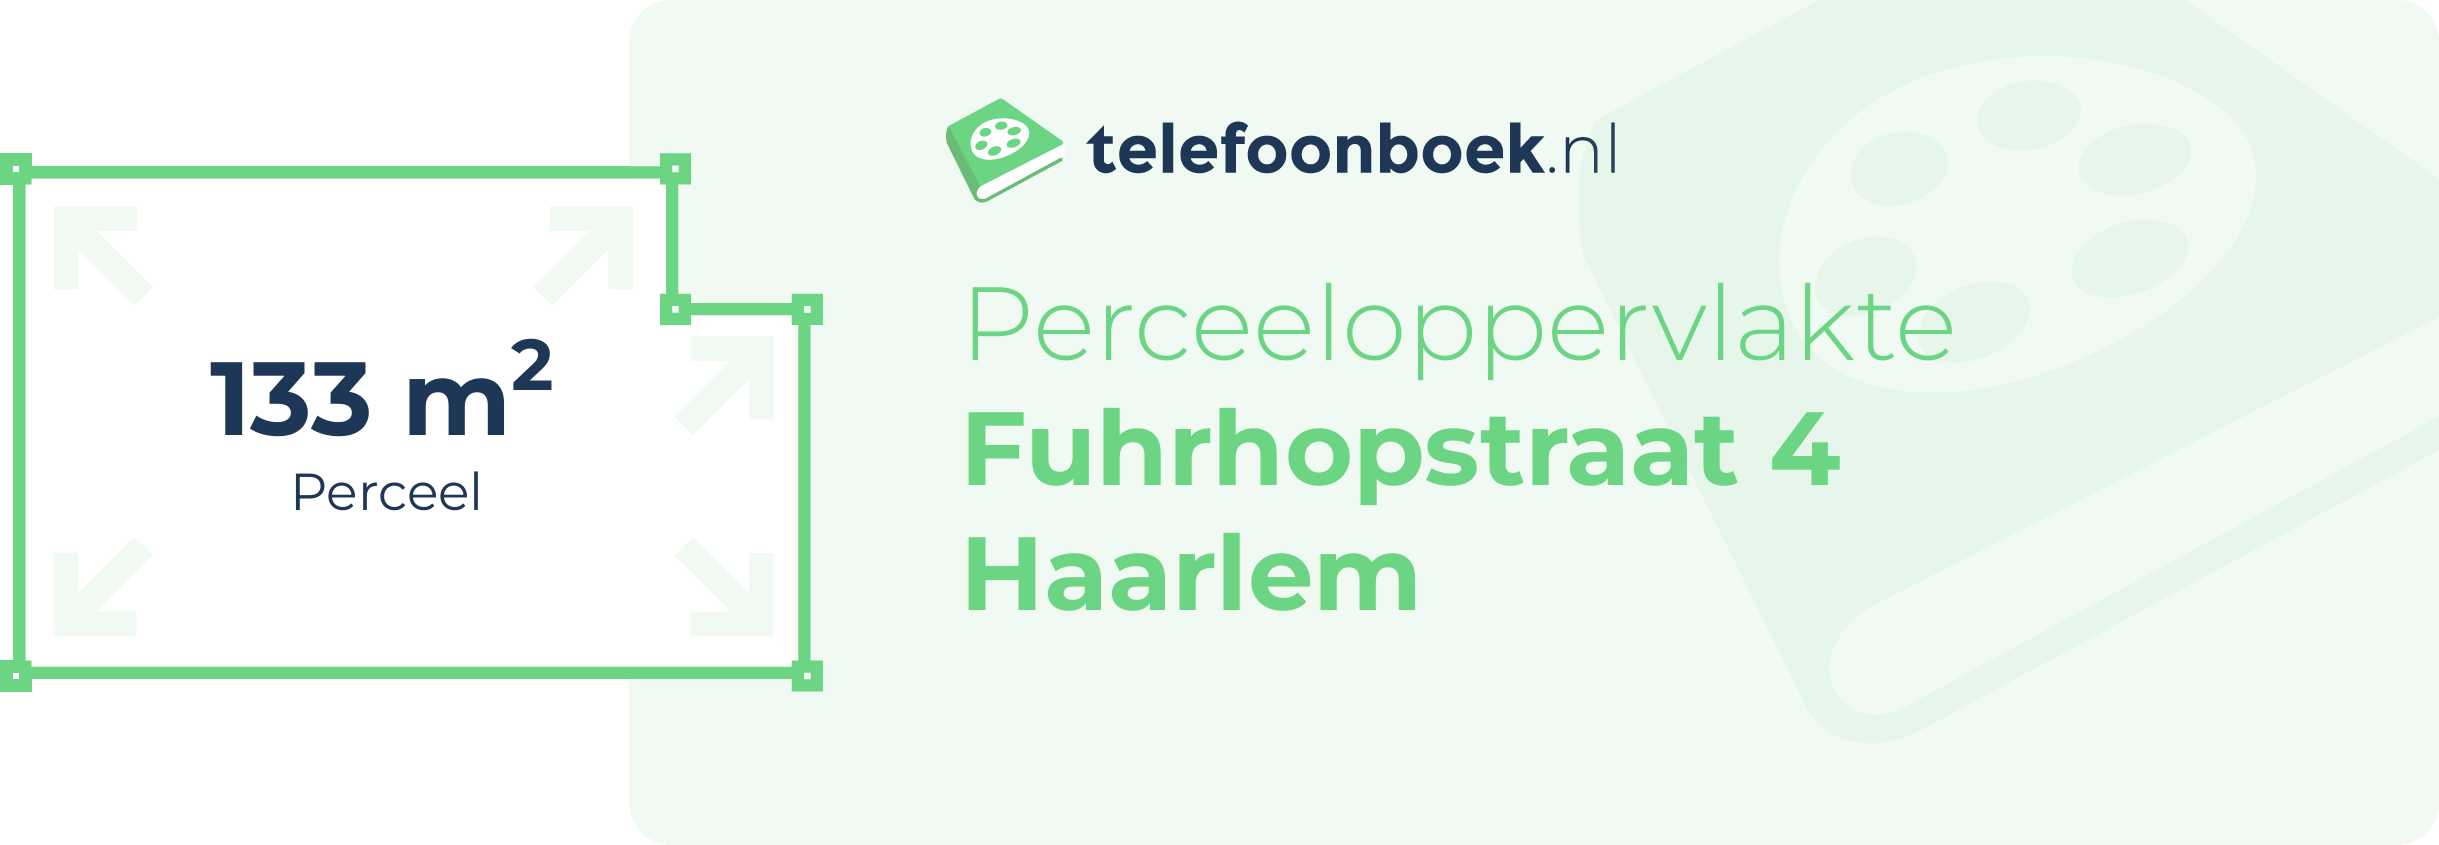 Perceeloppervlakte Fuhrhopstraat 4 Haarlem